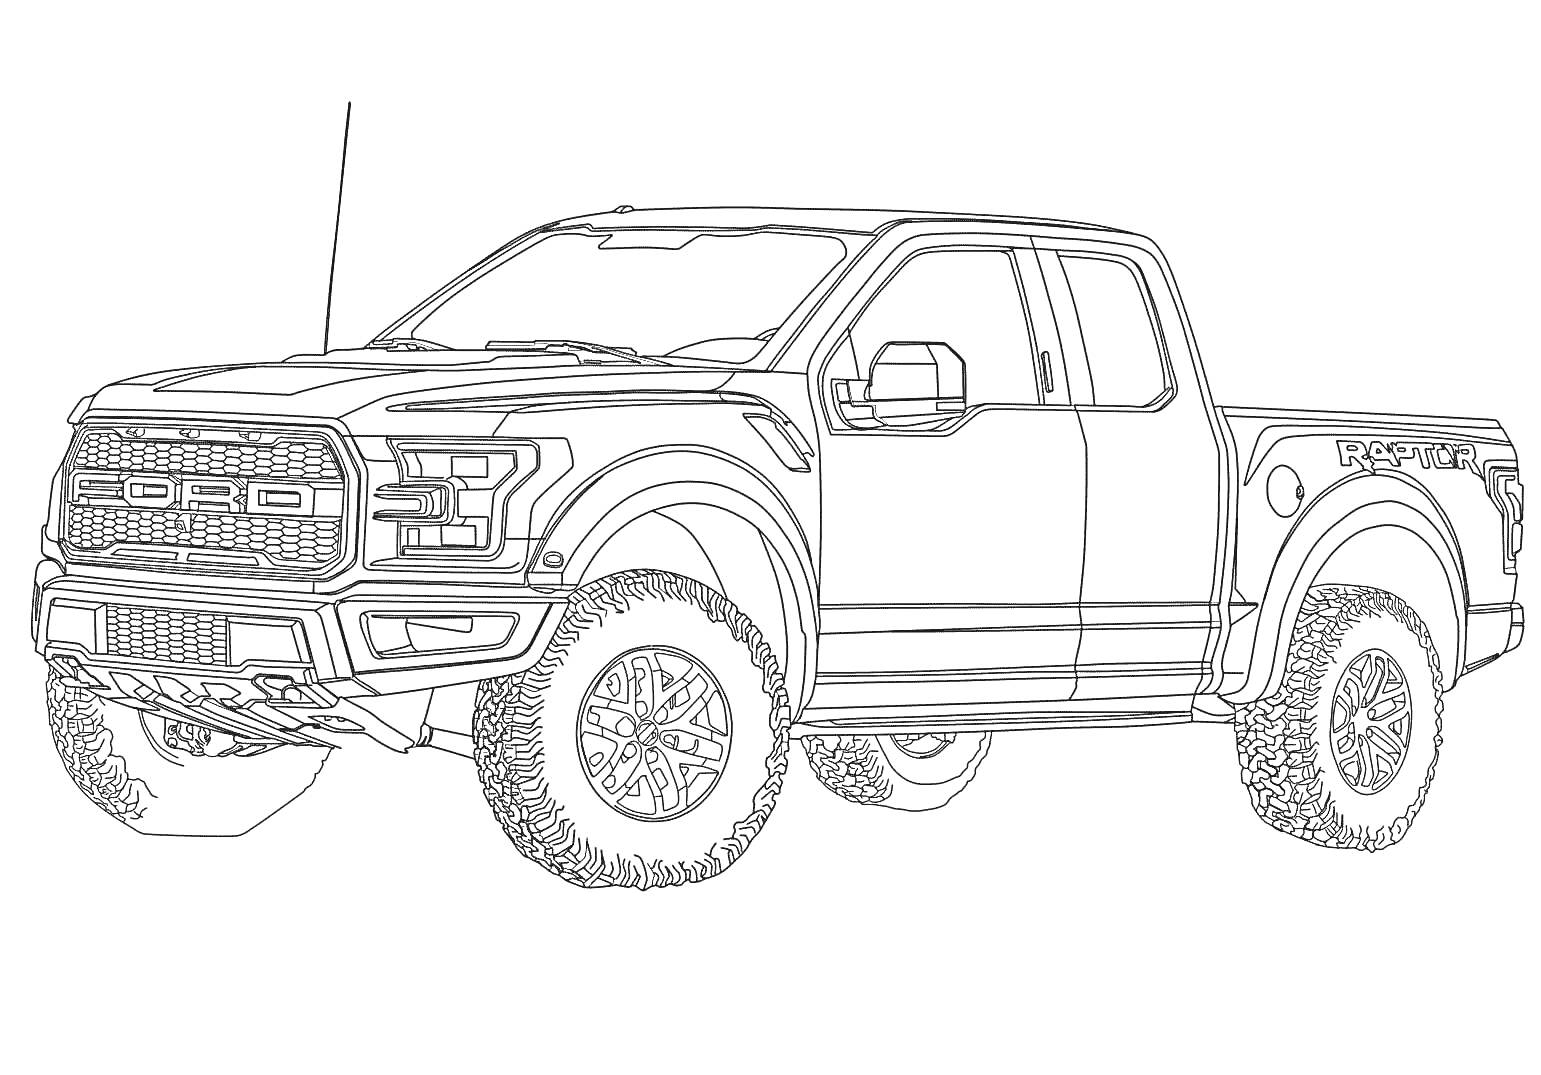 Ford Raptor, внедорожник с крупными колесами и передними фарами